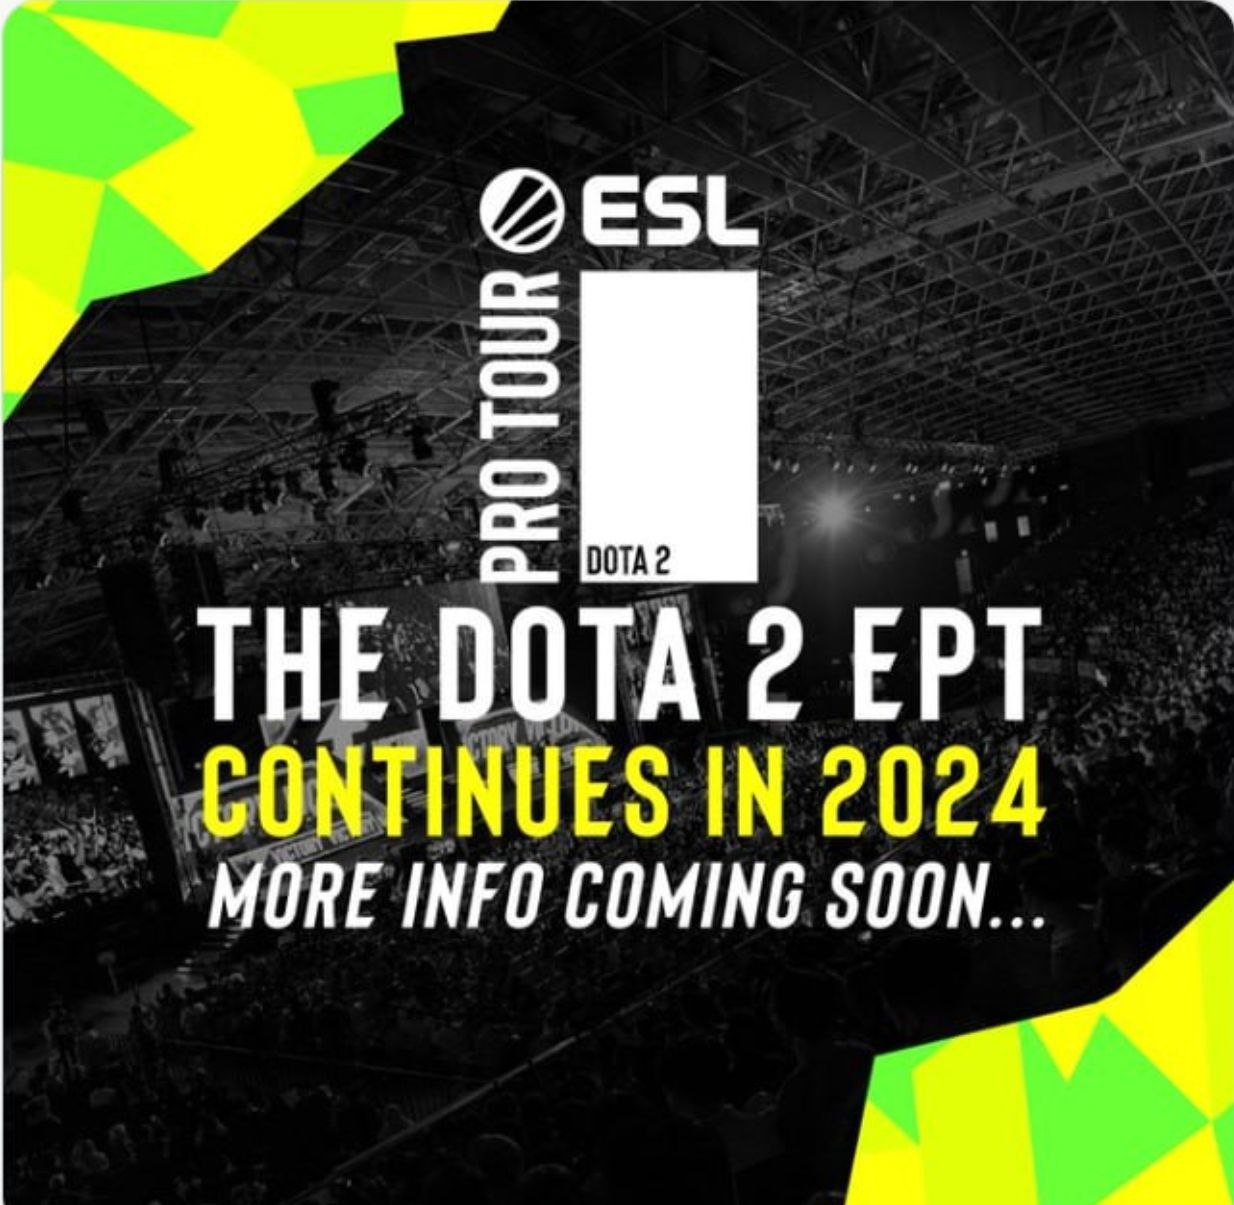 ESL продолжит проводить турниры EPT на про-сцене Dota 2 в 2024 году